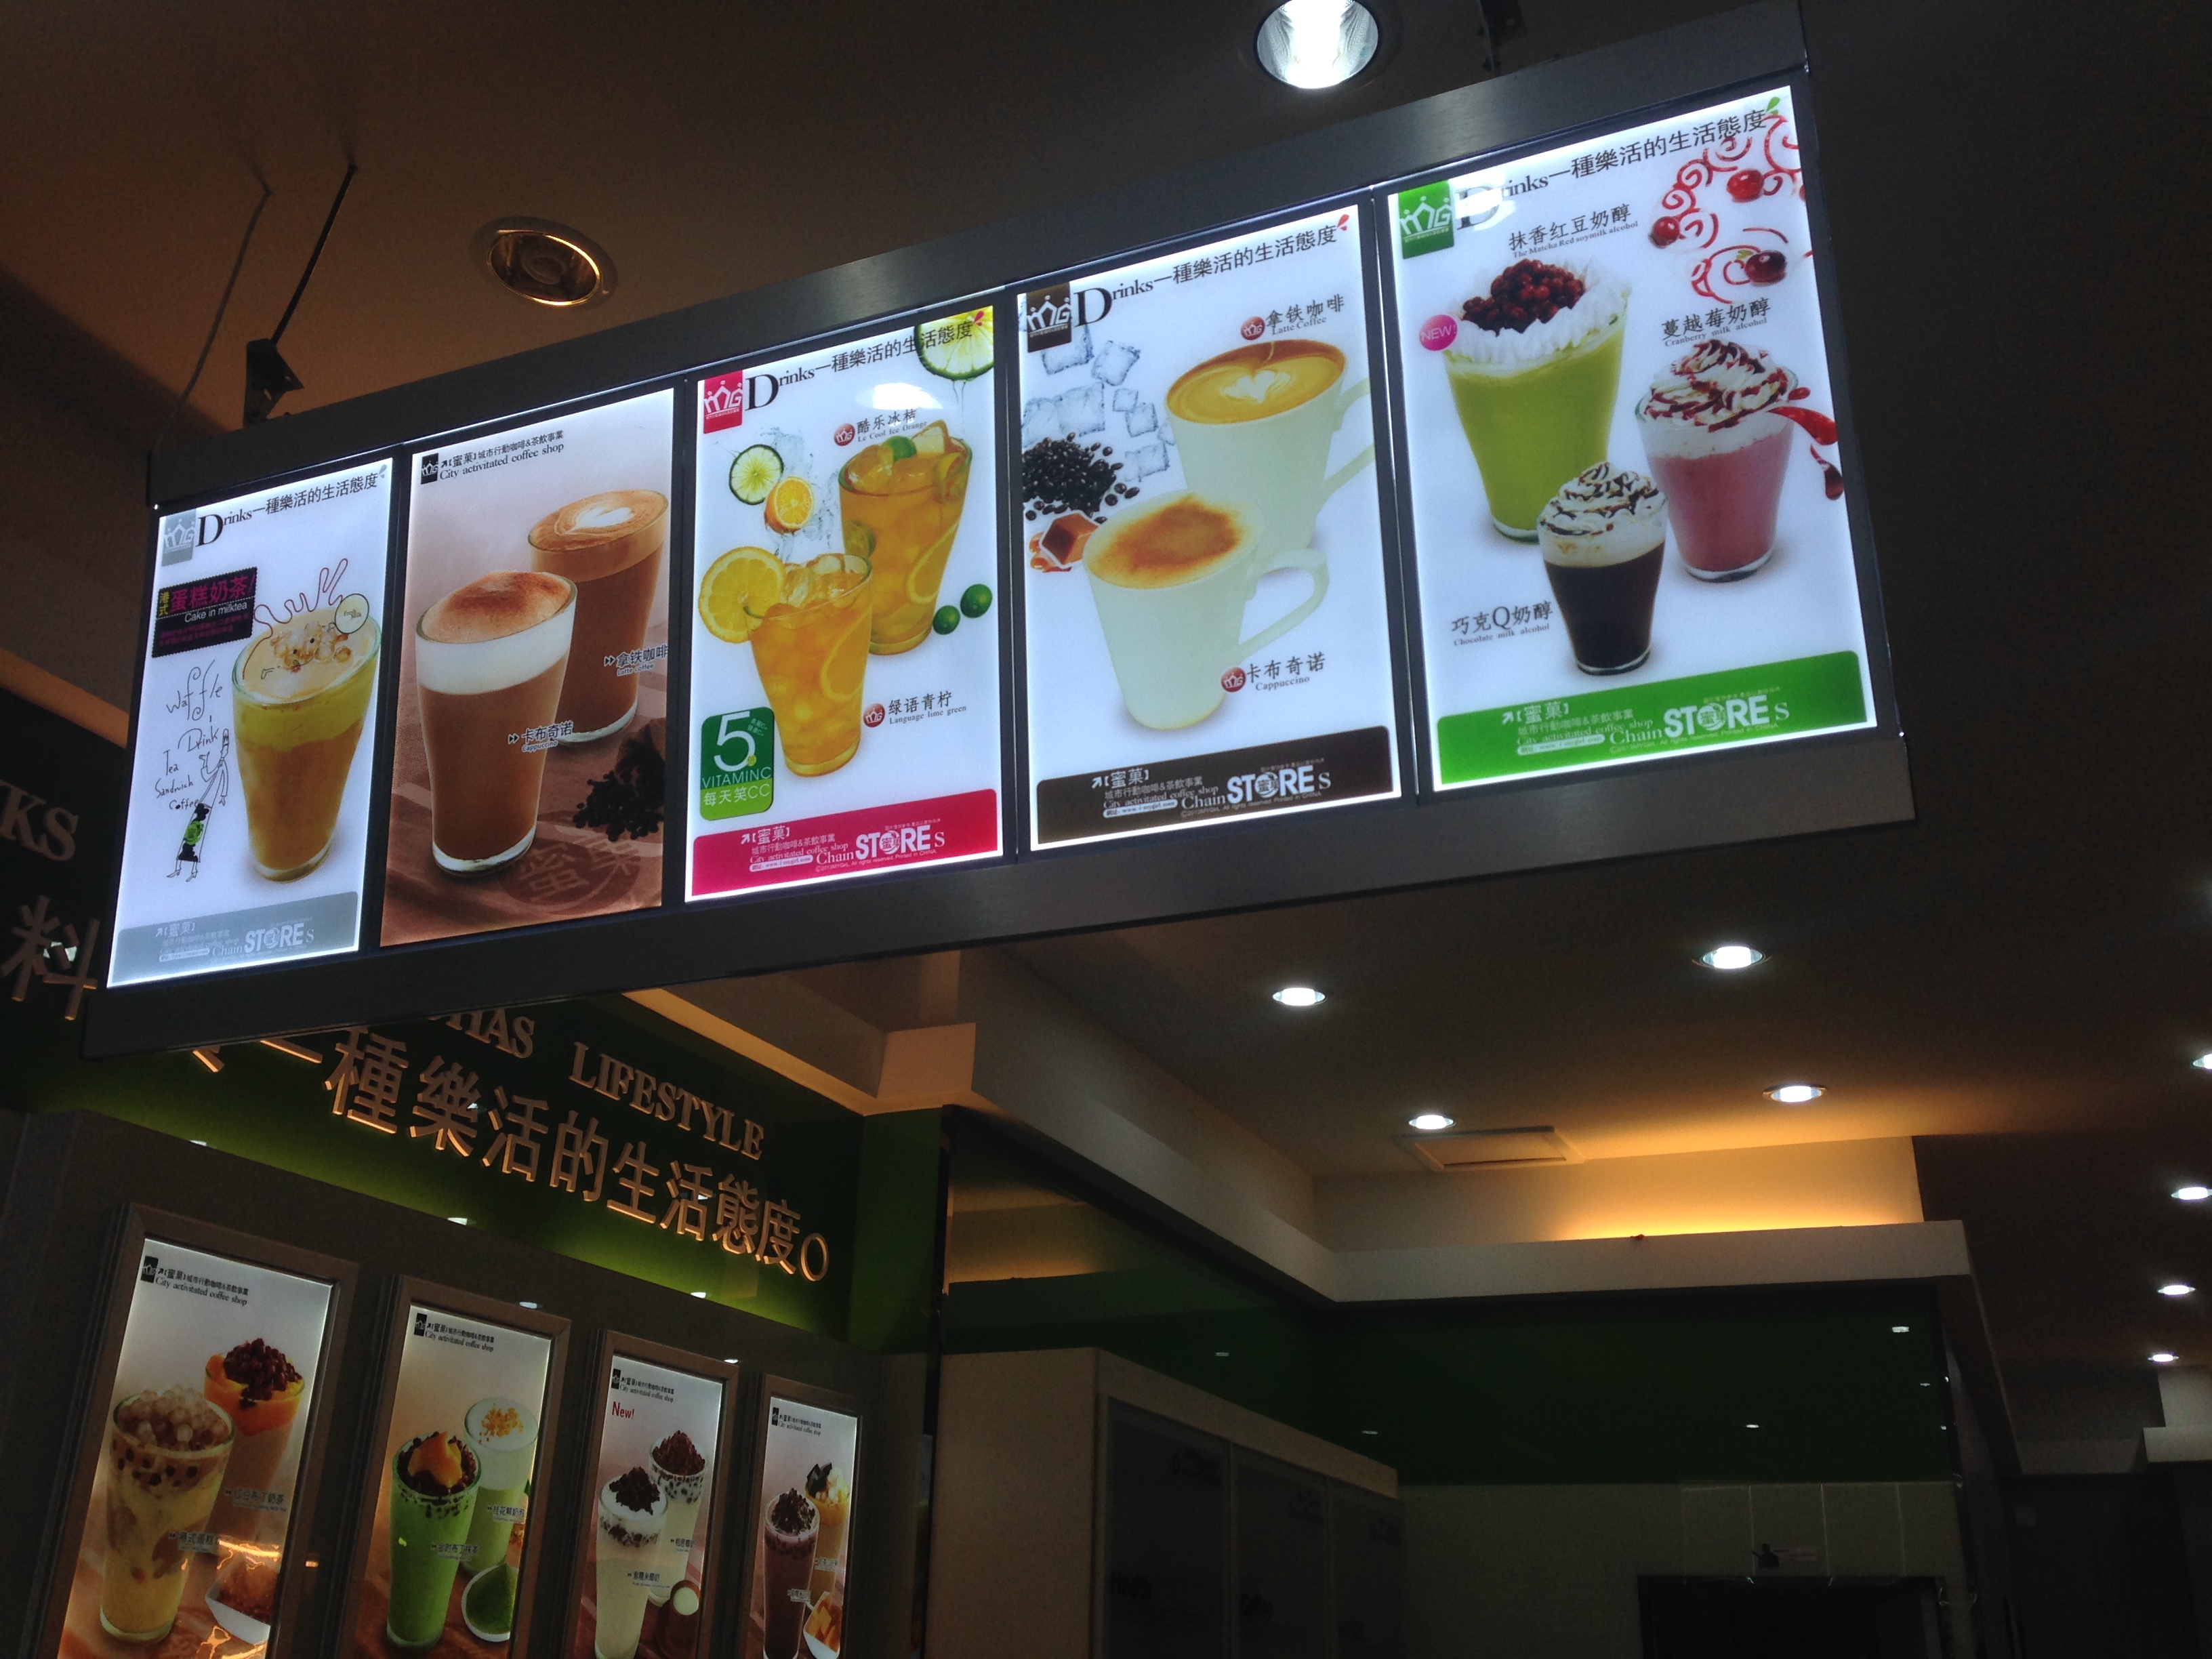 冰激凌奶茶店的广告招牌设计